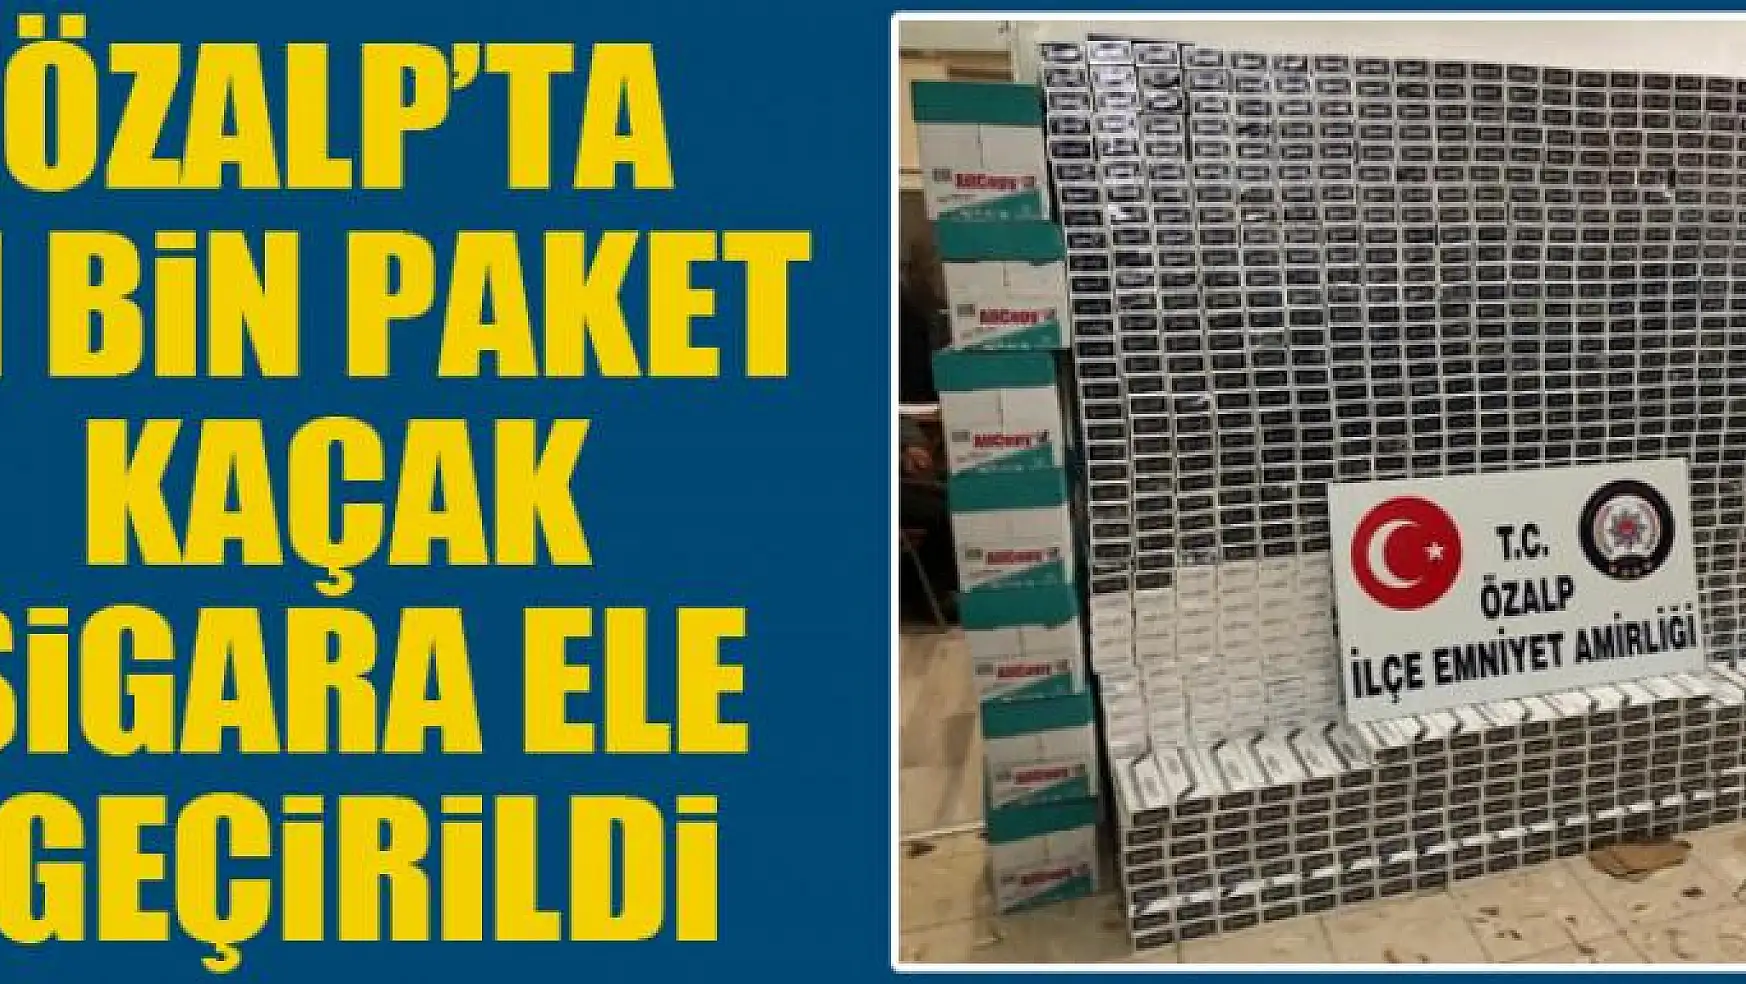 Özalp'ta 11 bin paket kaçak sigara ele geçirildi